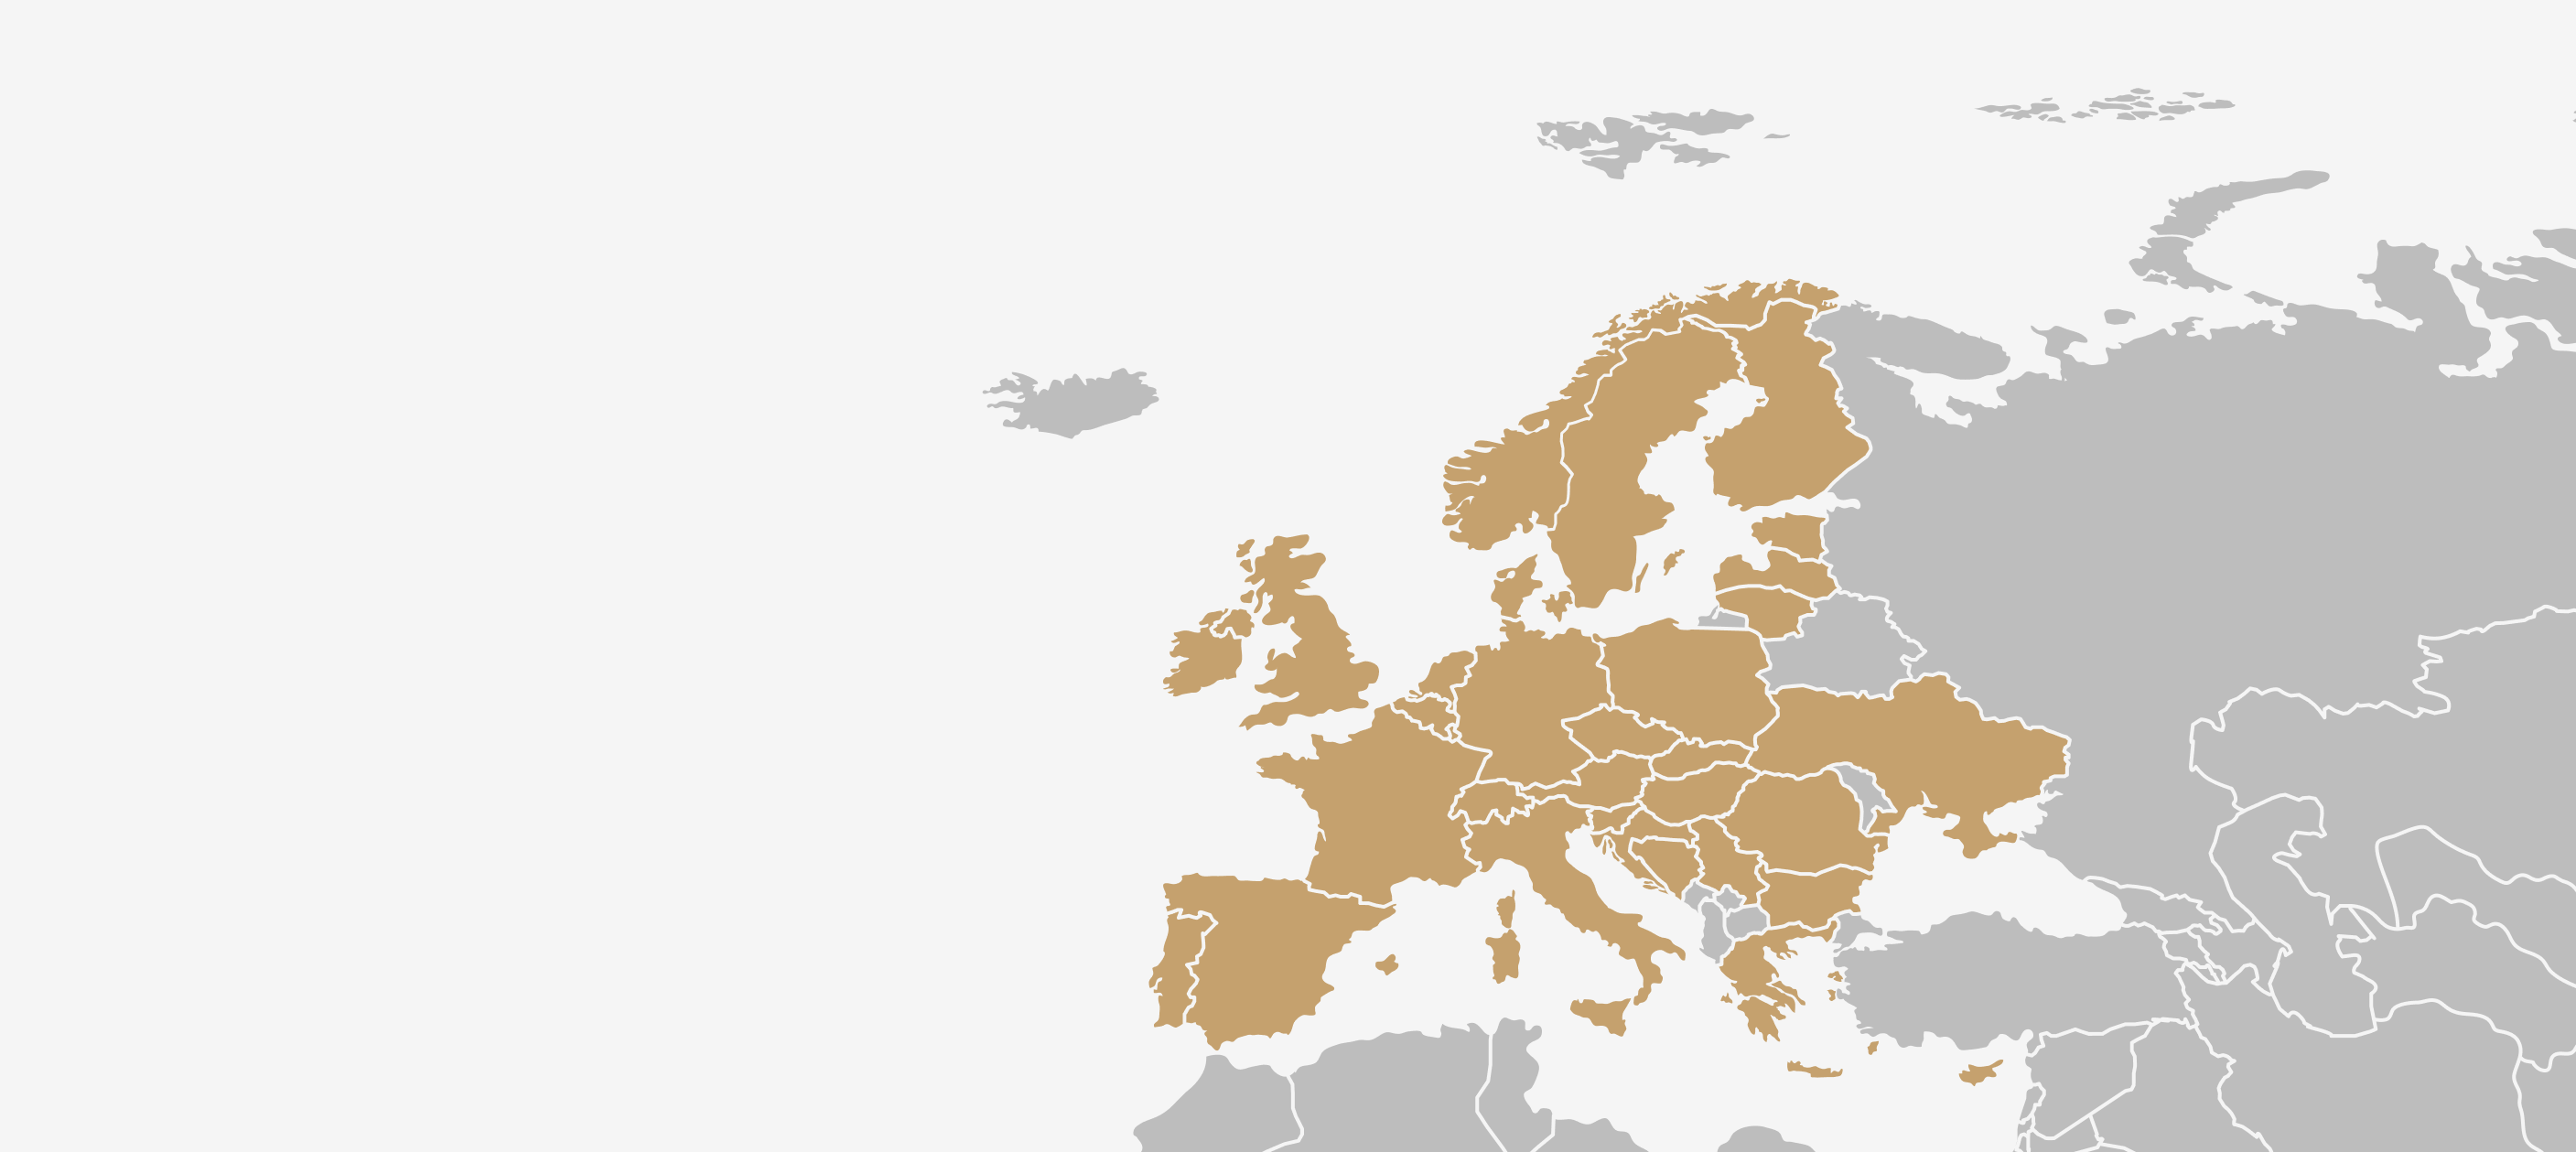 Harmonelo - Wir sind in 34 Ländern Europas... Doch unsere Ziele reichen viel weiter!